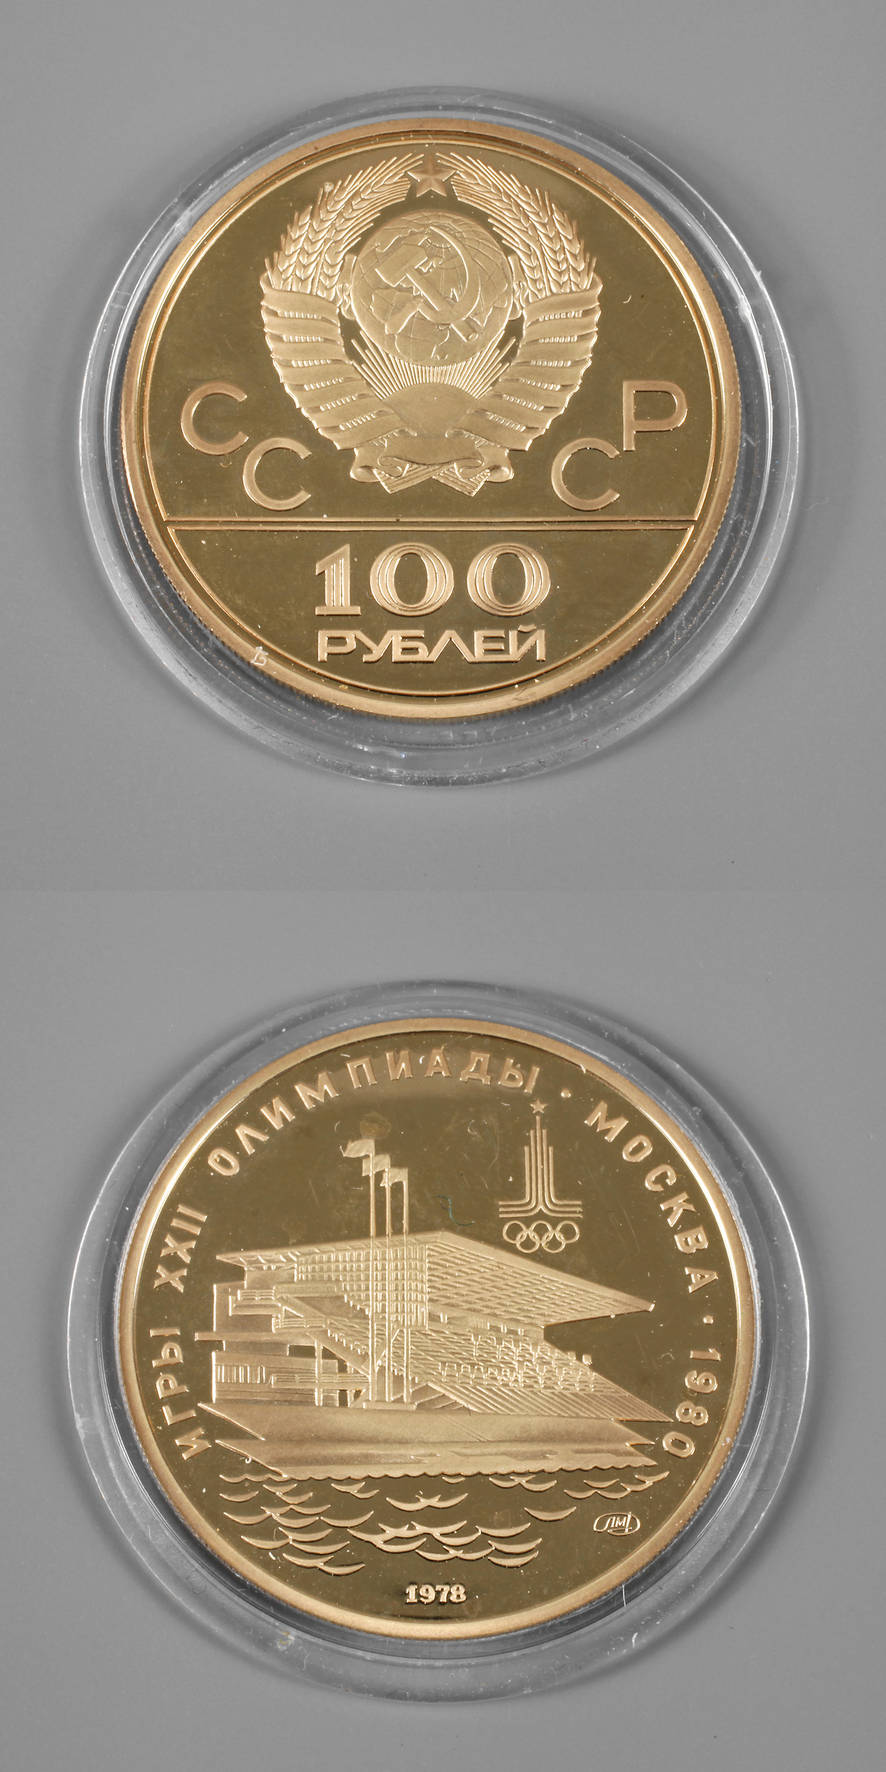 Goldmedaille Olympiade Moskau 1978